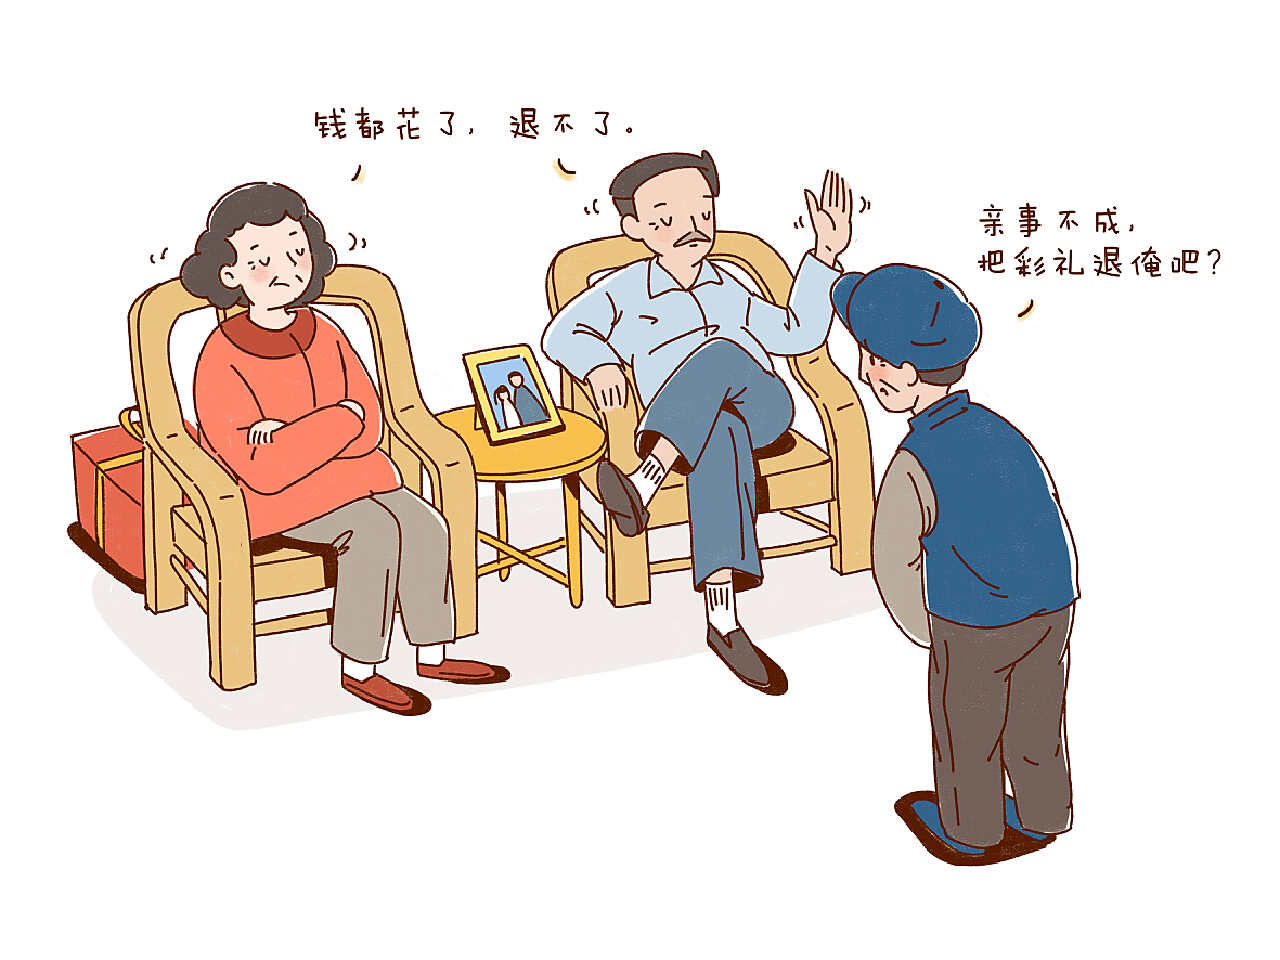 老张和他的四个车站_图说中国人的生活_图片频道_央视网